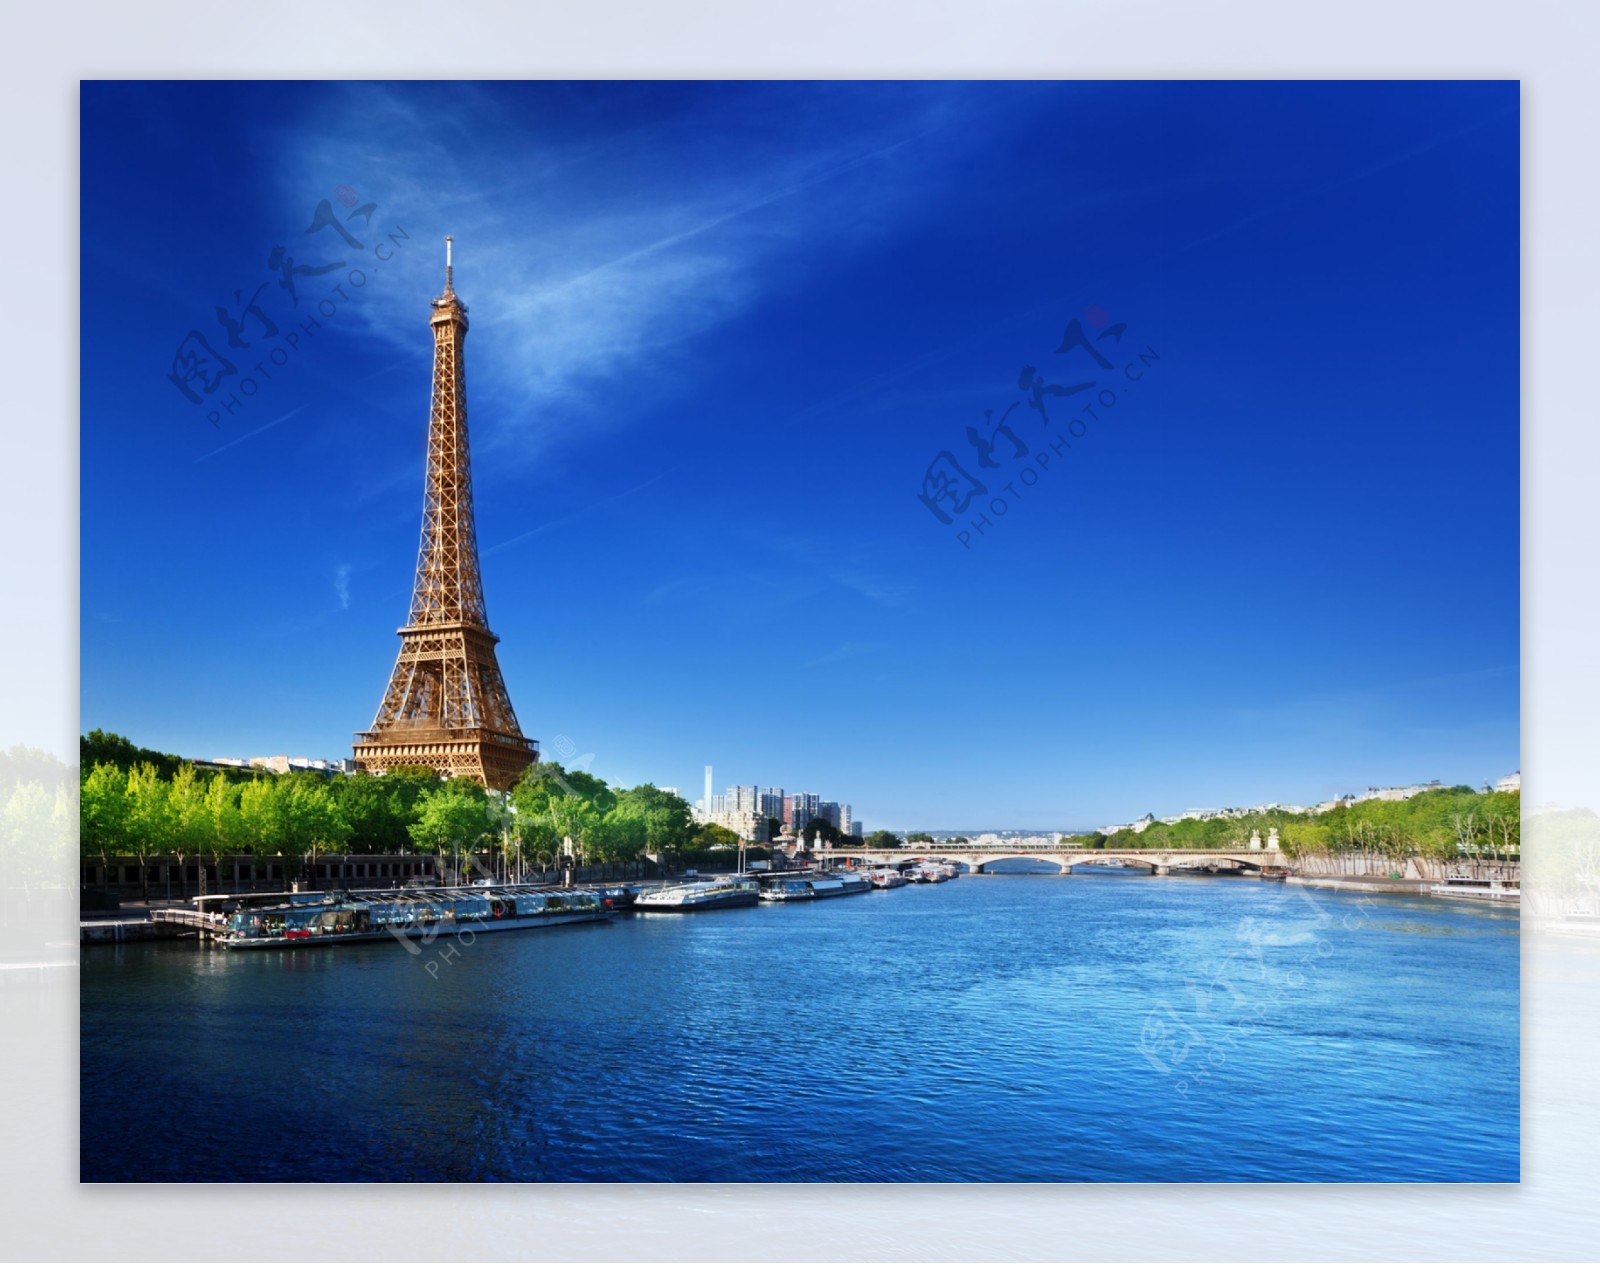 巴黎风景图片